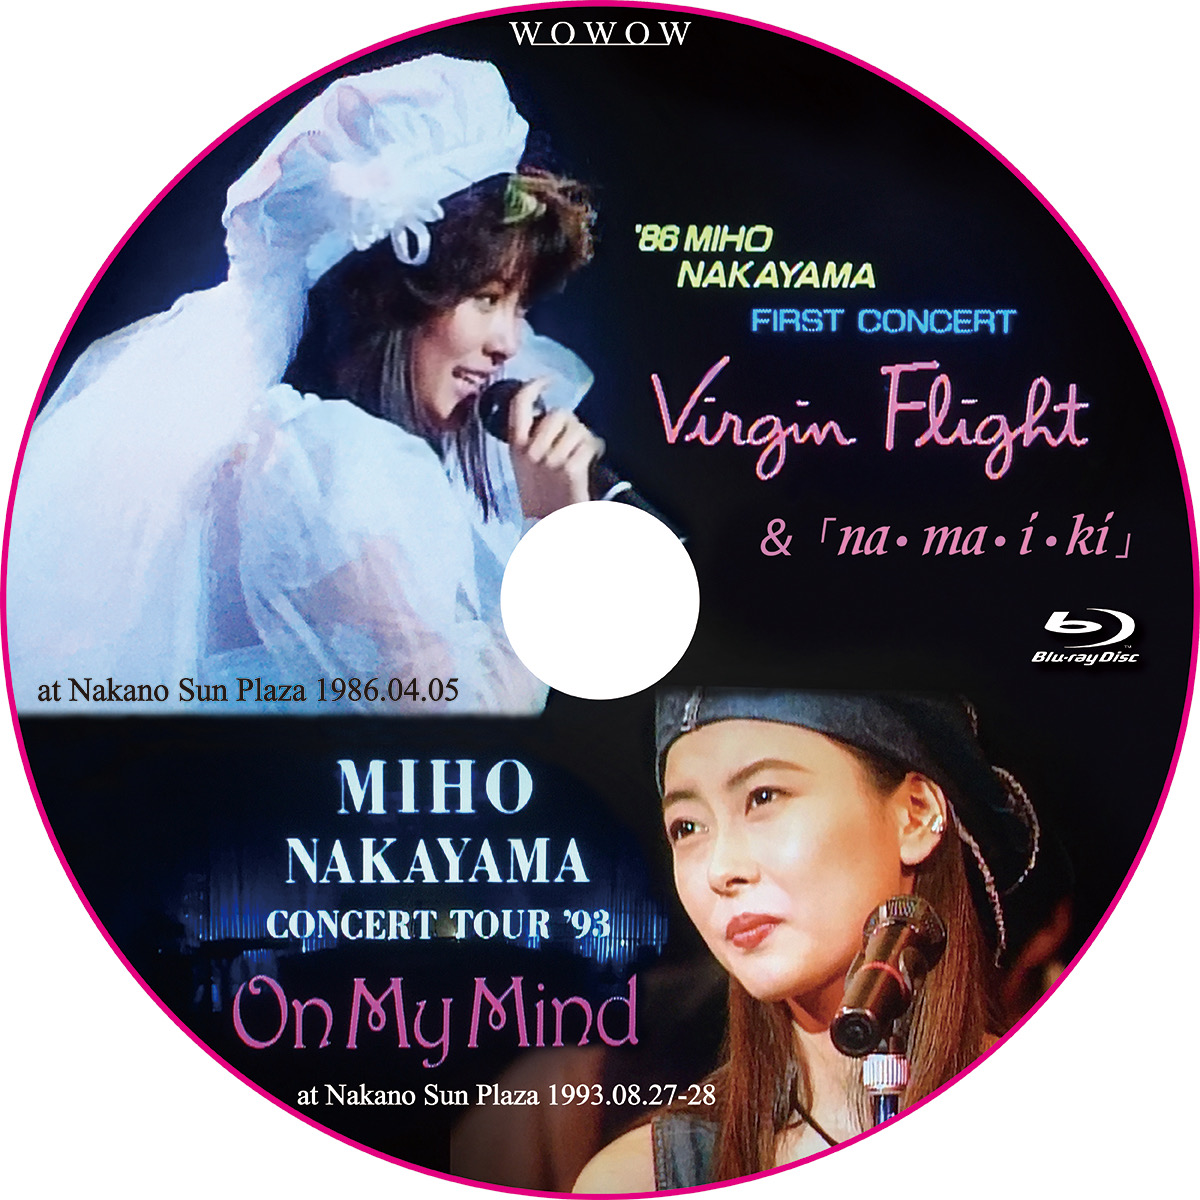 中山美穂 Virgin Flight 86 Miho Nakayama First Concert Na Ma I Ki Miho Nakayama Concert Tour 93 On My Mind Wowowライブ レーベル屋さん